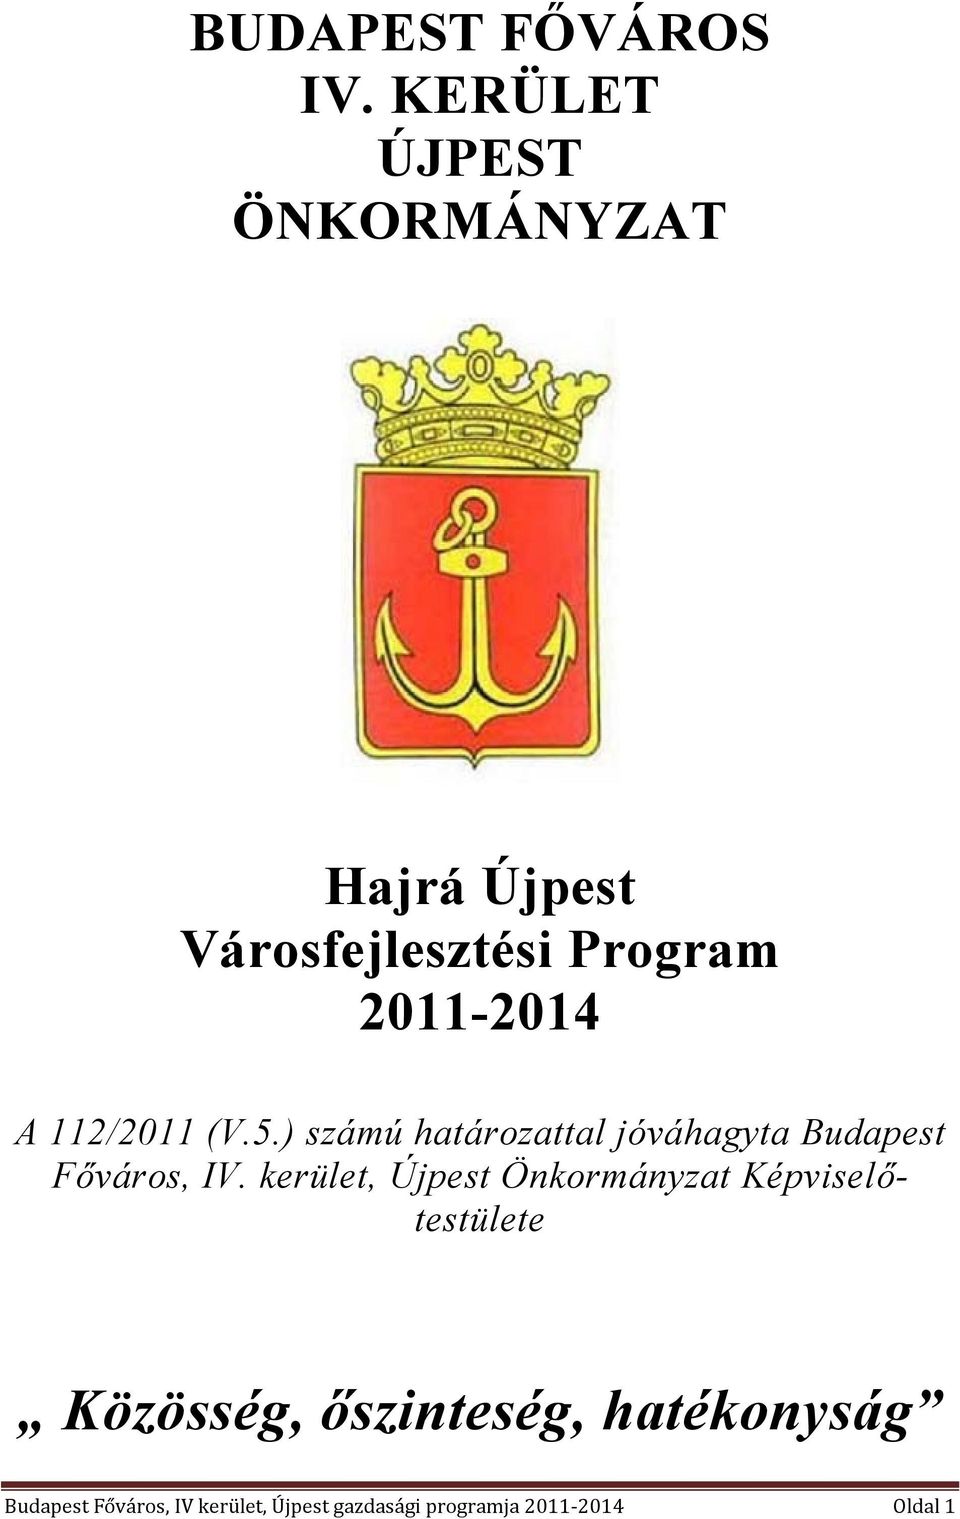 112/2011 (V.5.) számú határozattal jóváhagyta Budapest Főváros, IV.